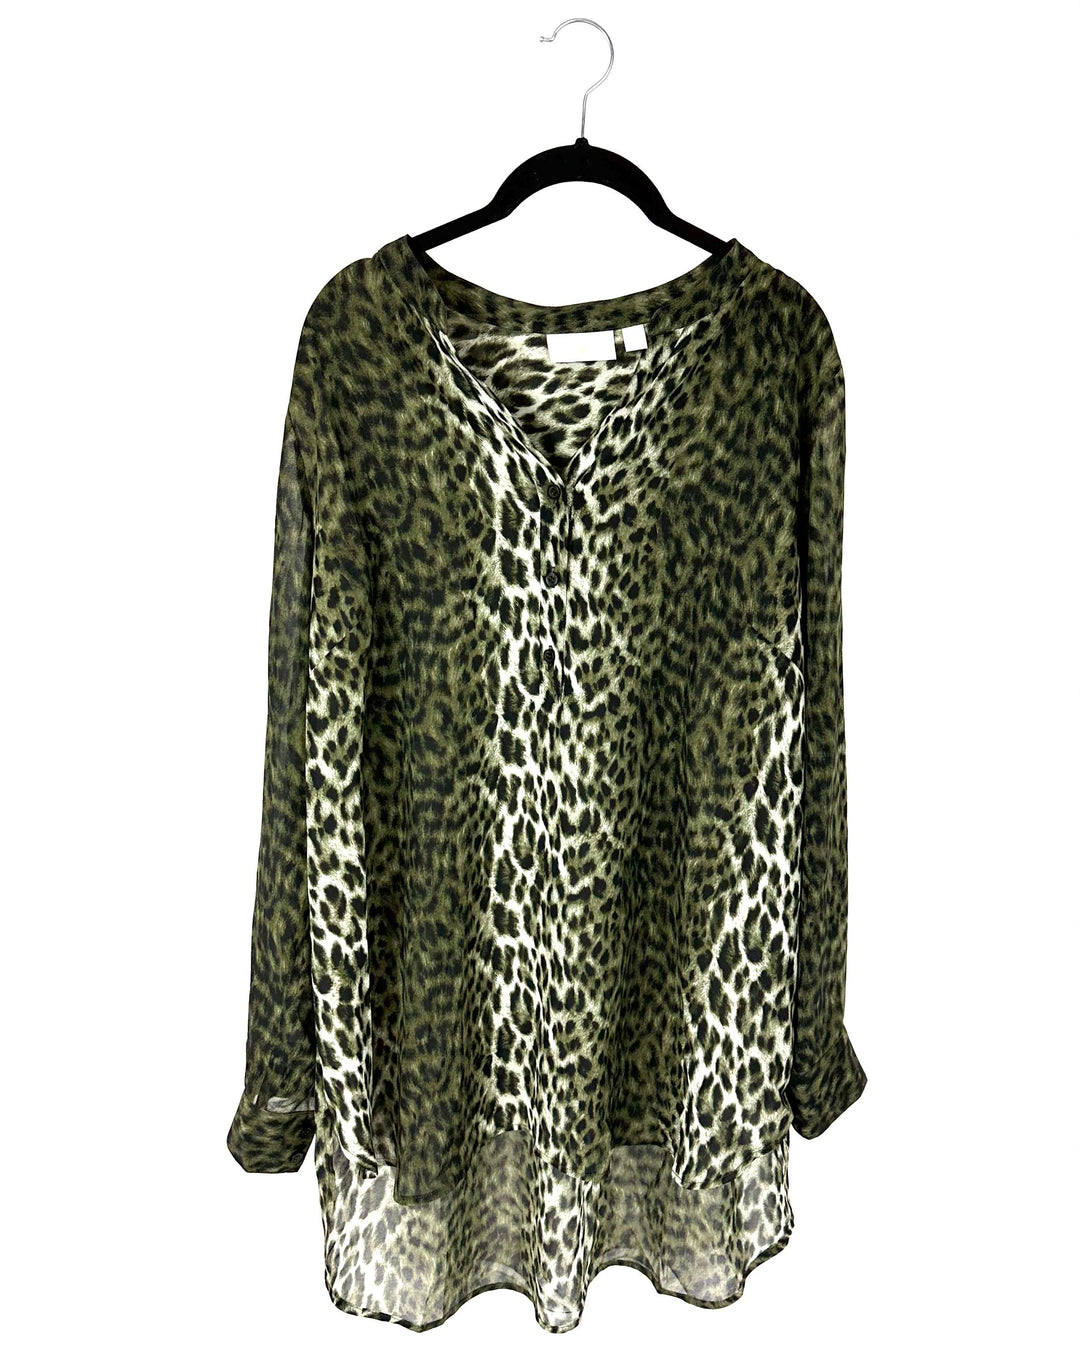 Green Leopard Print Flowy Blouse - Size 14-16